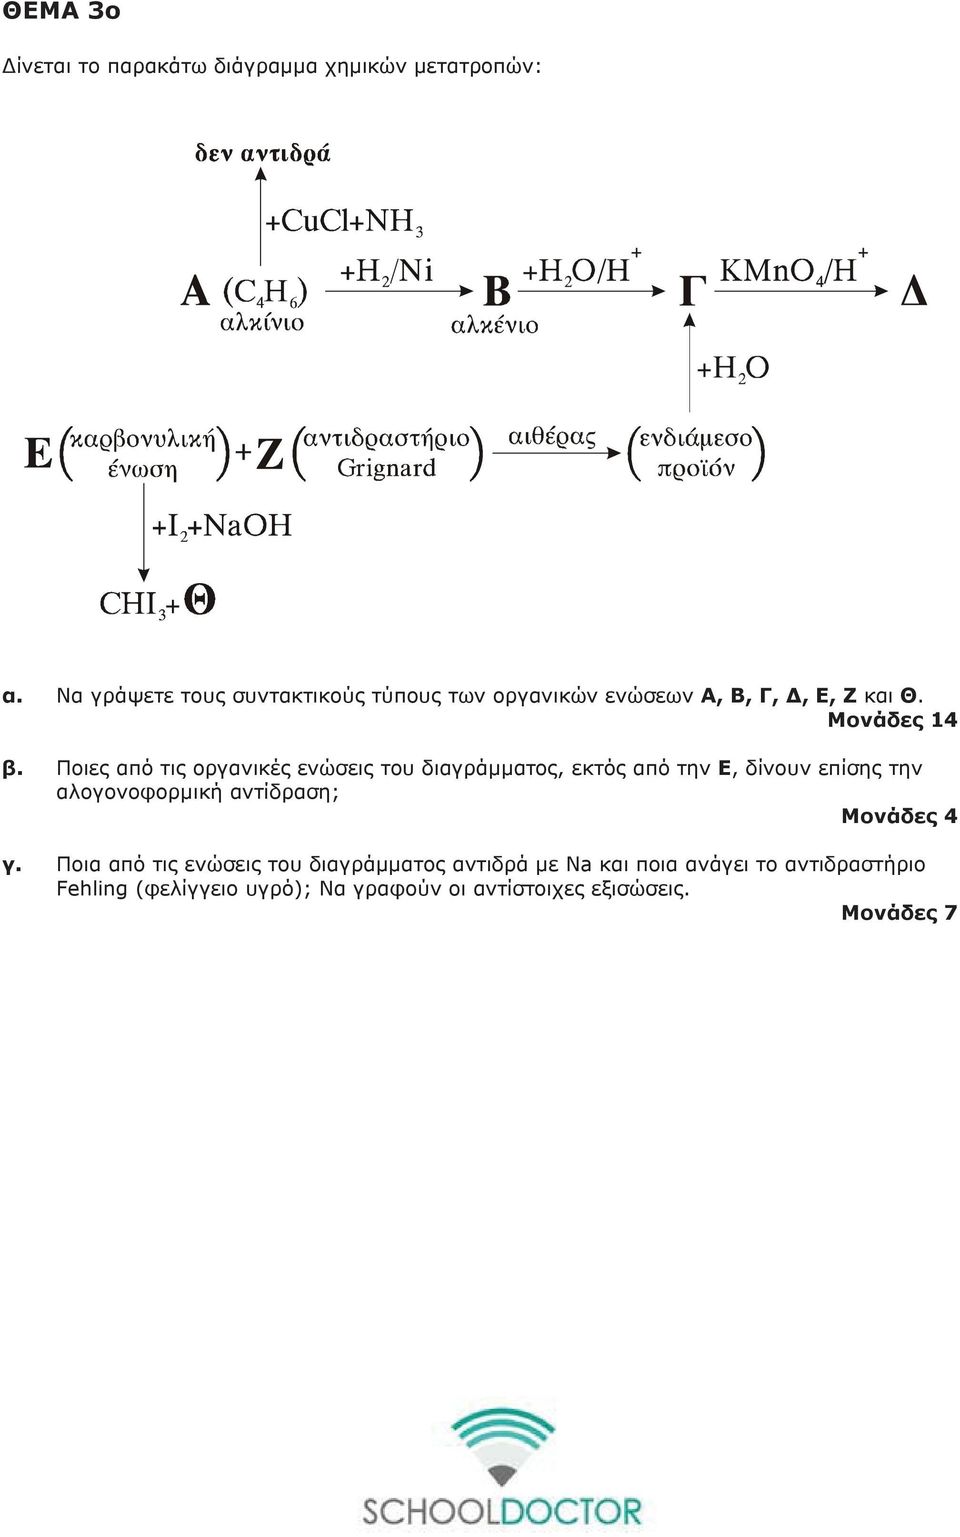 Ποιες από τις οργανικές ενώσεις του διαγράμματος, εκτός από την Ε, δίνουν επίσης την αλογονοφορμική αντίδραση;